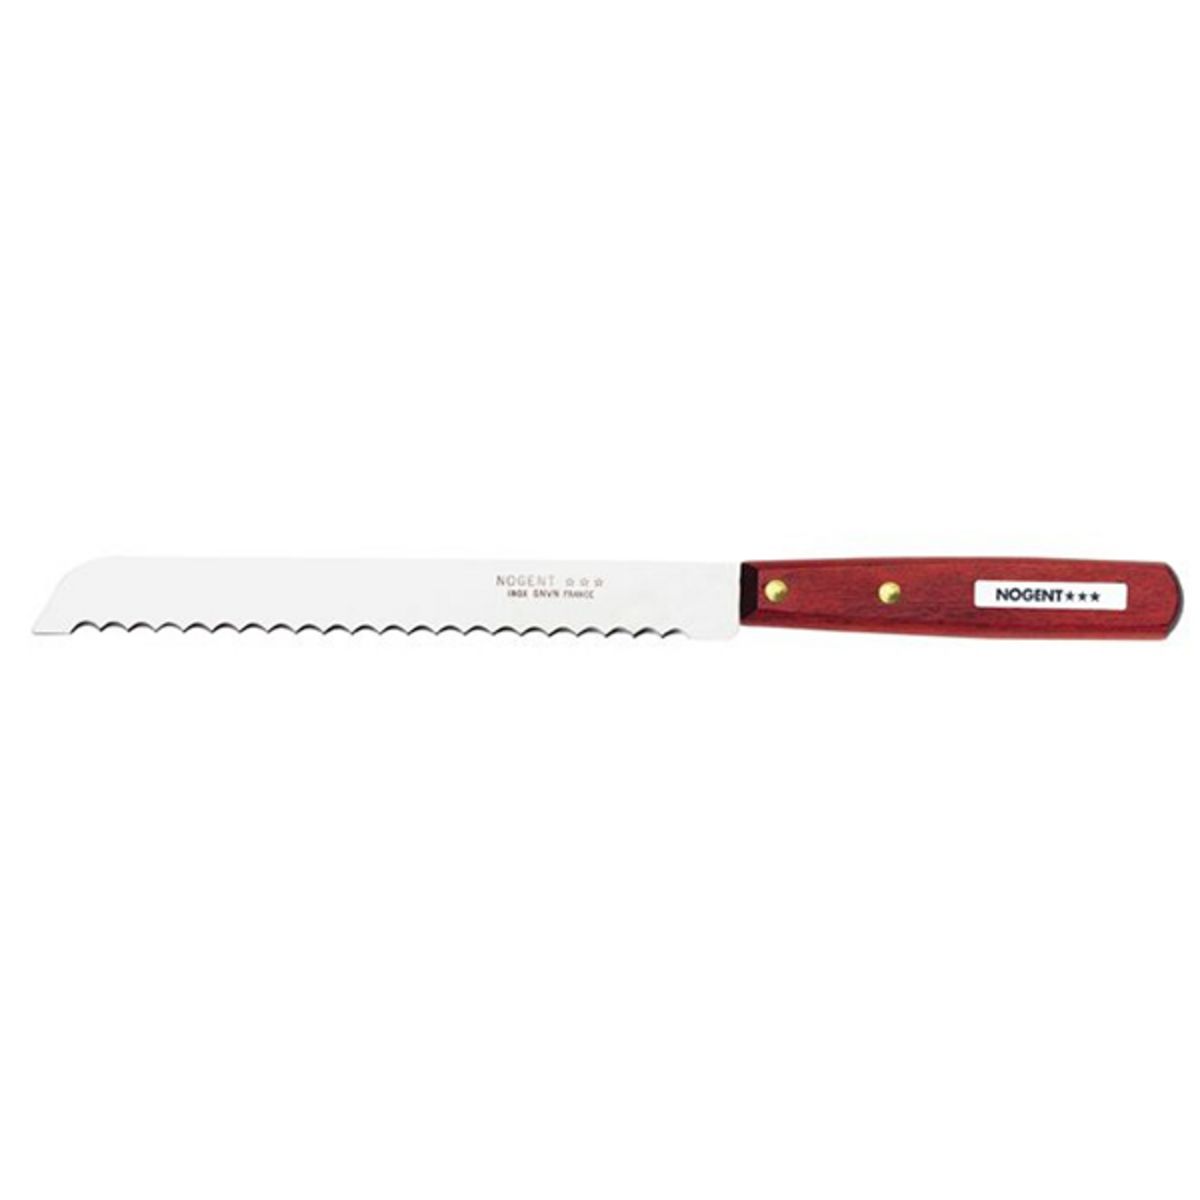 Nogent 3 etoiles Couteau à pain lame inox 19cm - 02080a